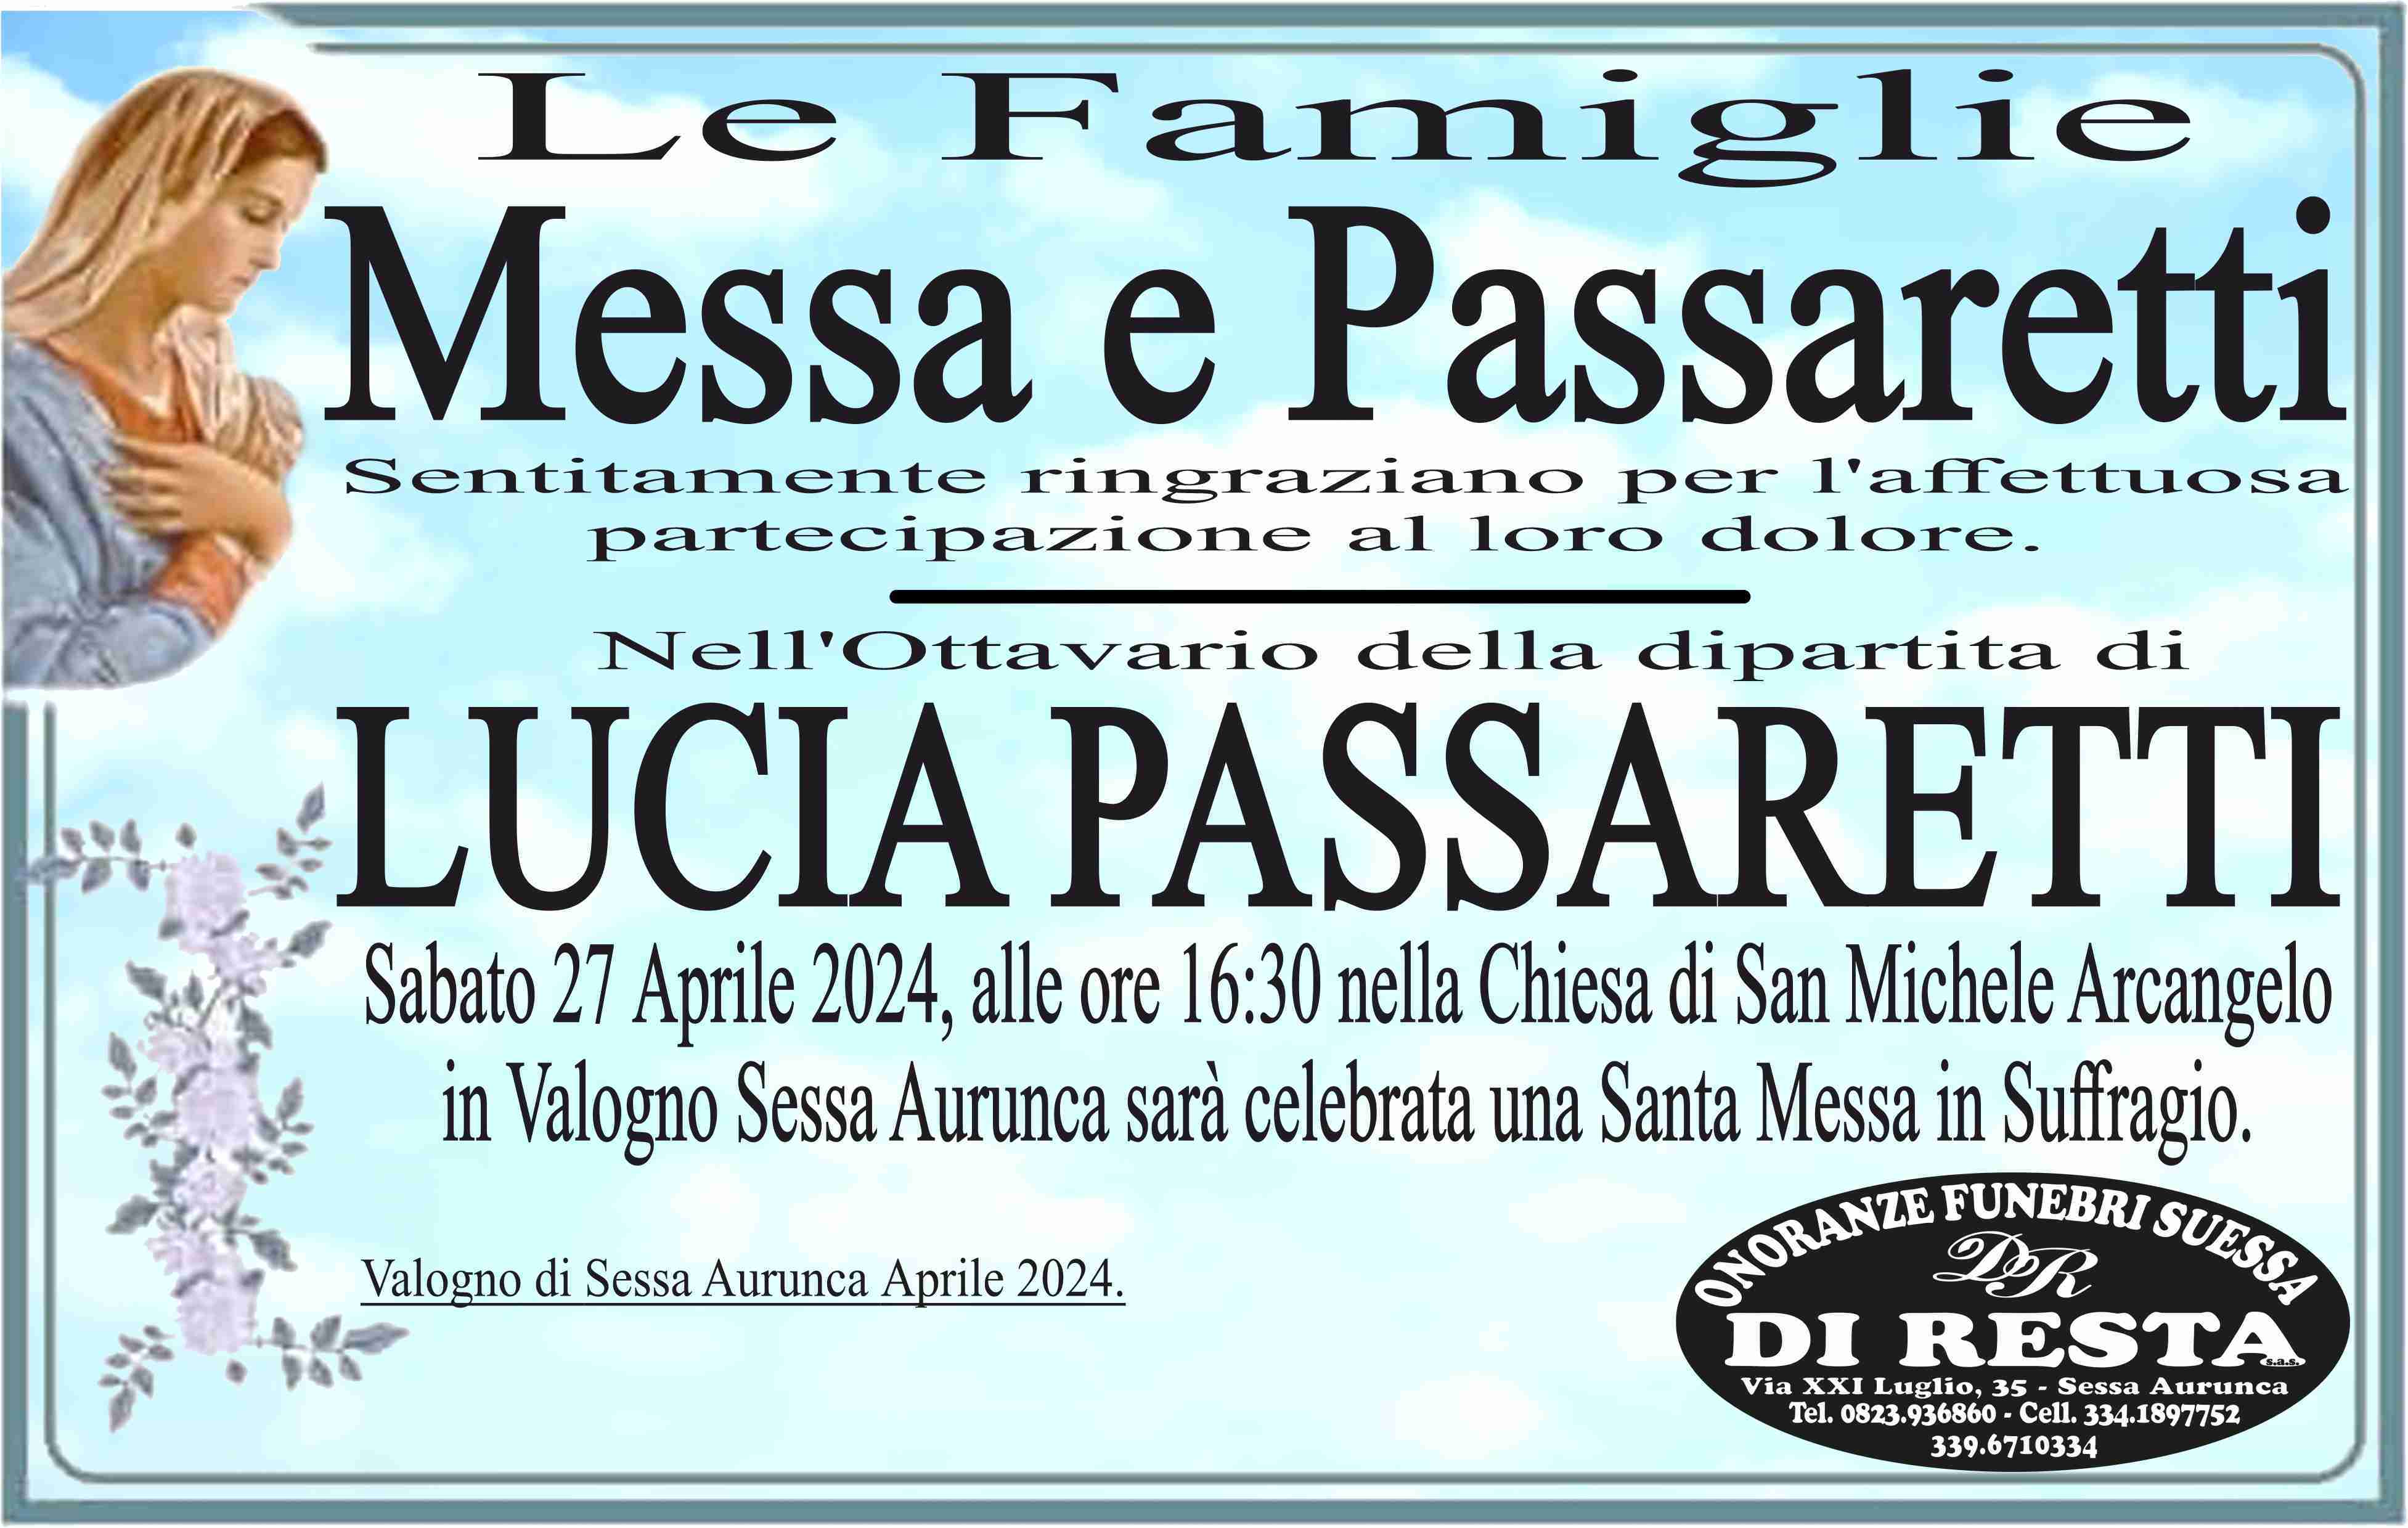 Lucia Passaretti